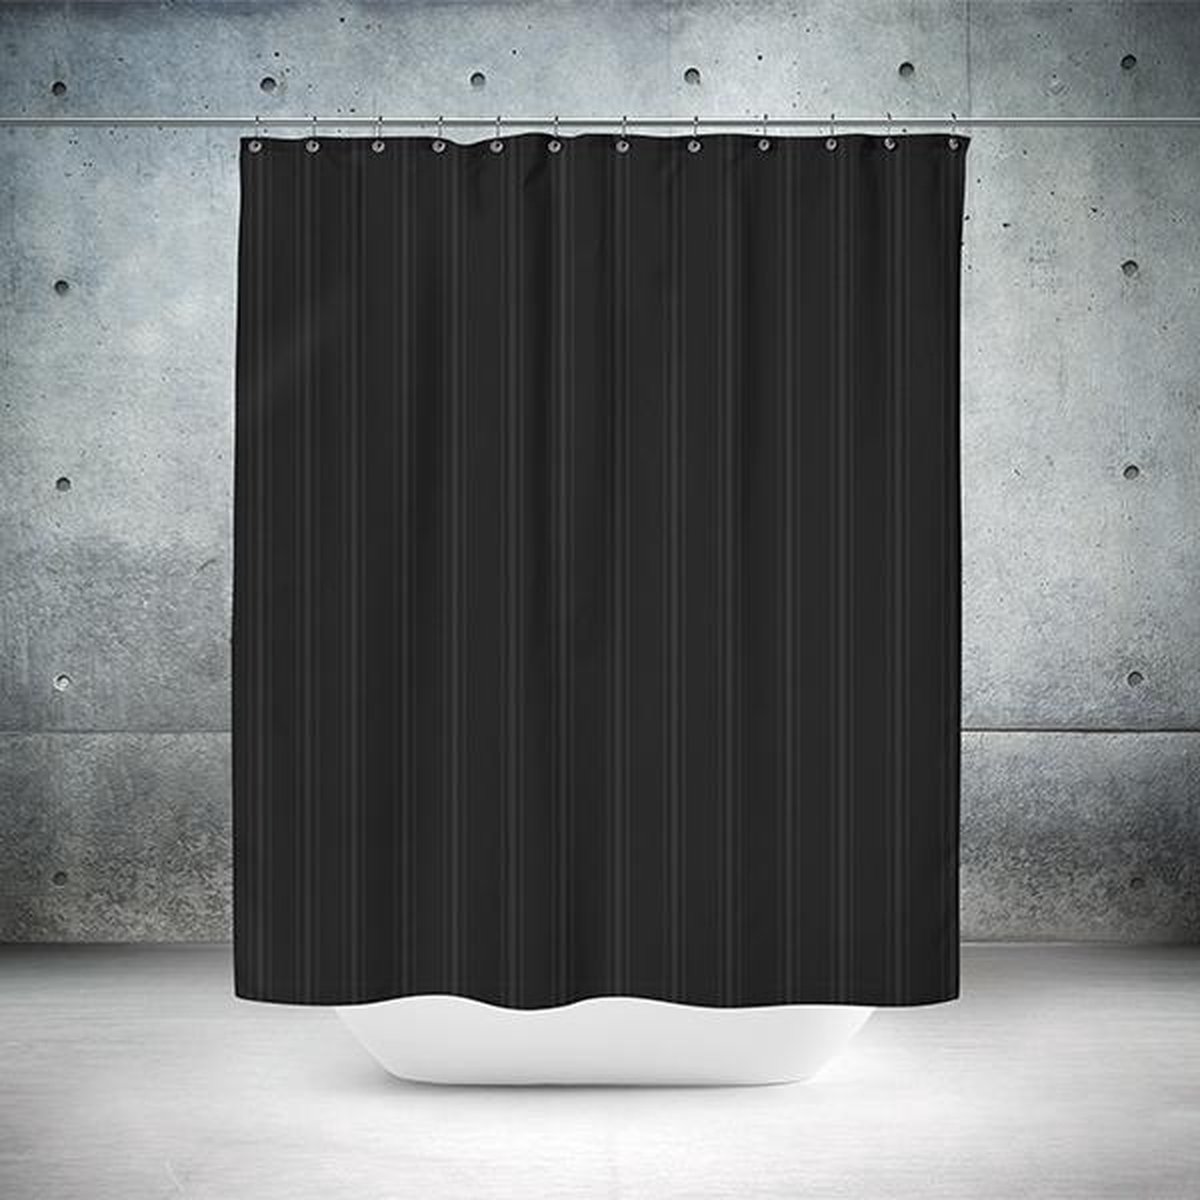 Roomture - douchegordijn - Classical black - 180 x 200